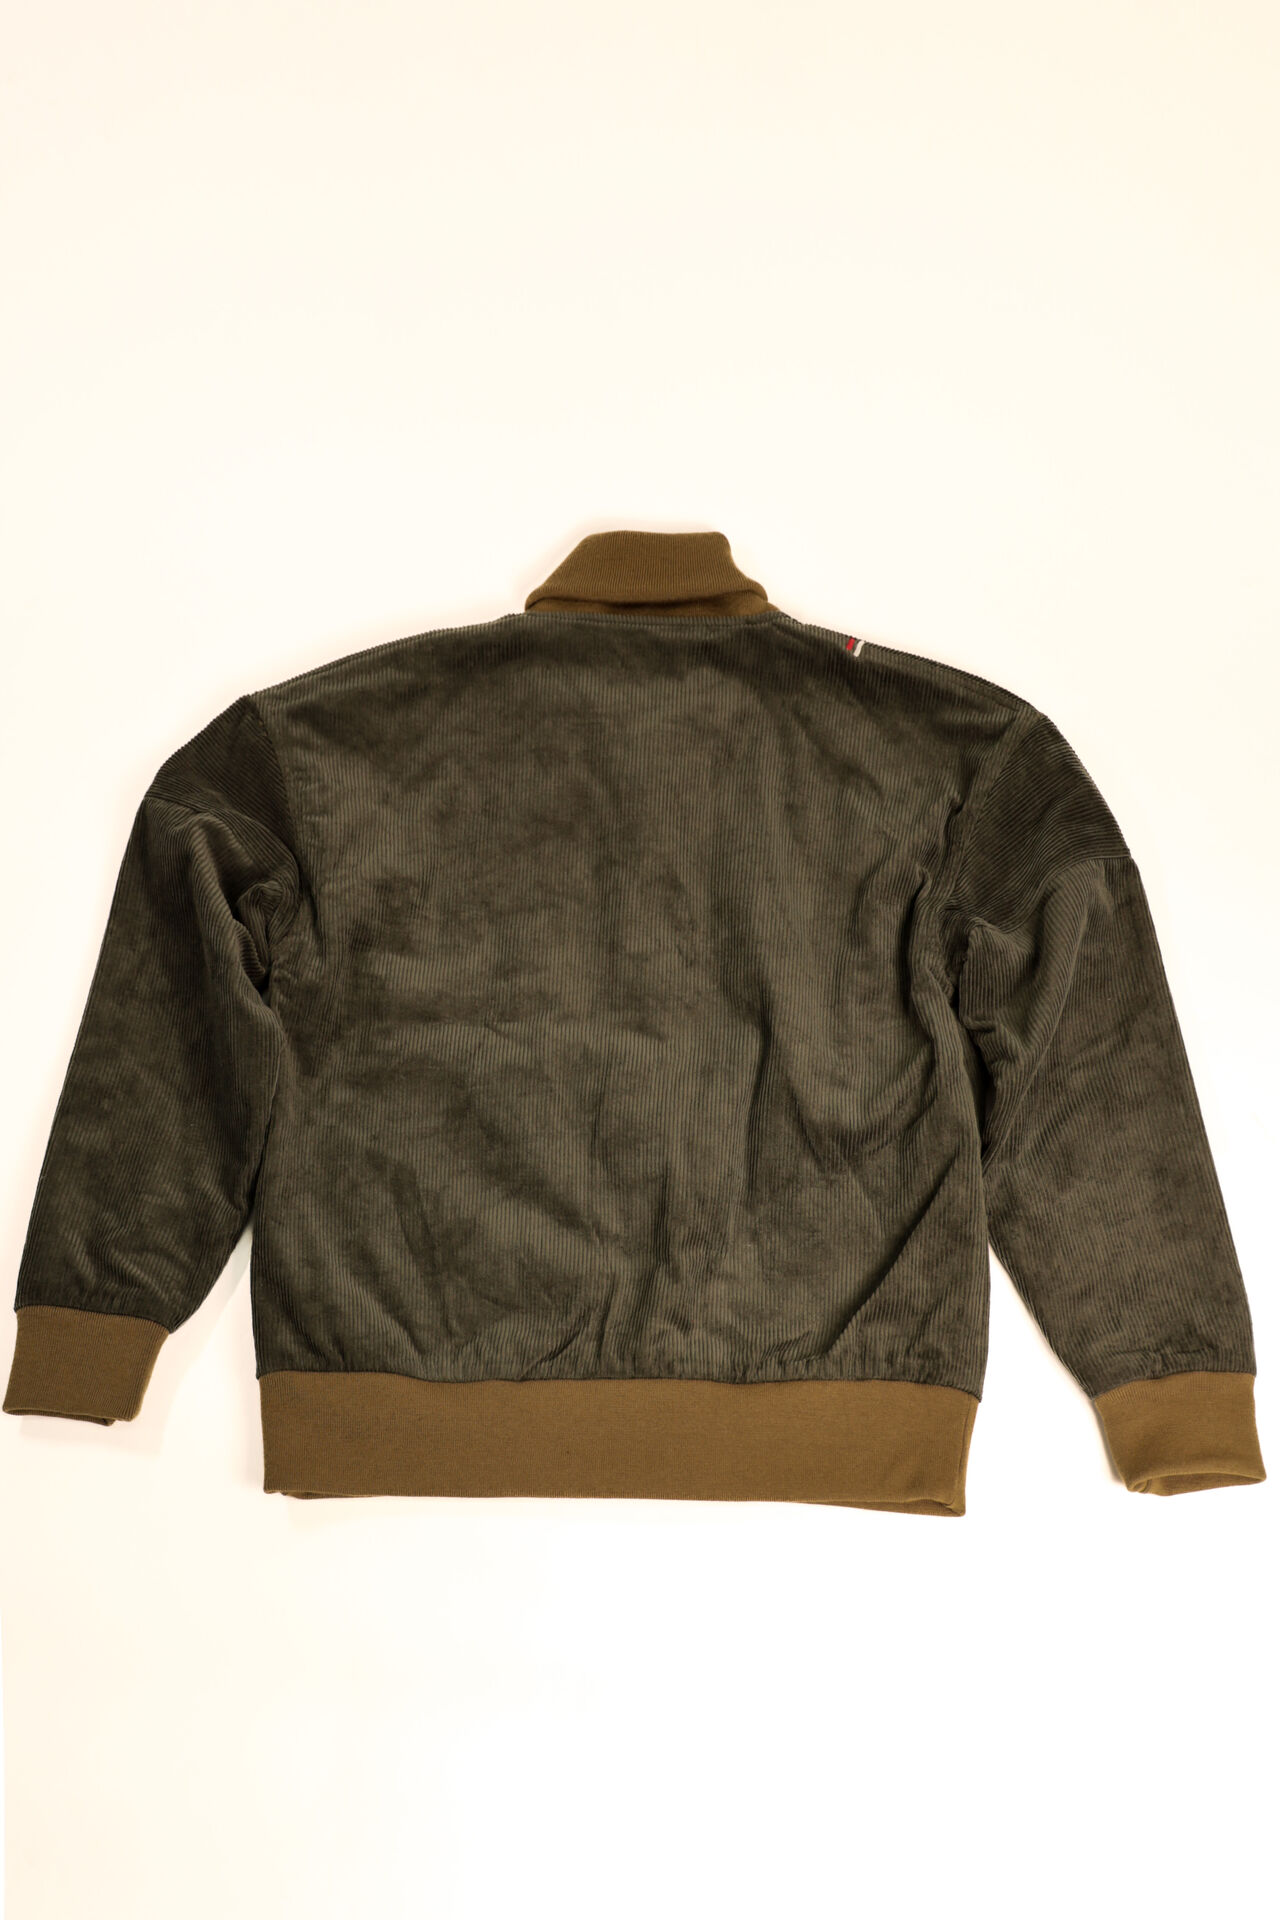 TNK501SZA "Sazanami" Corduroy Jacket (Olive),, large image number 12